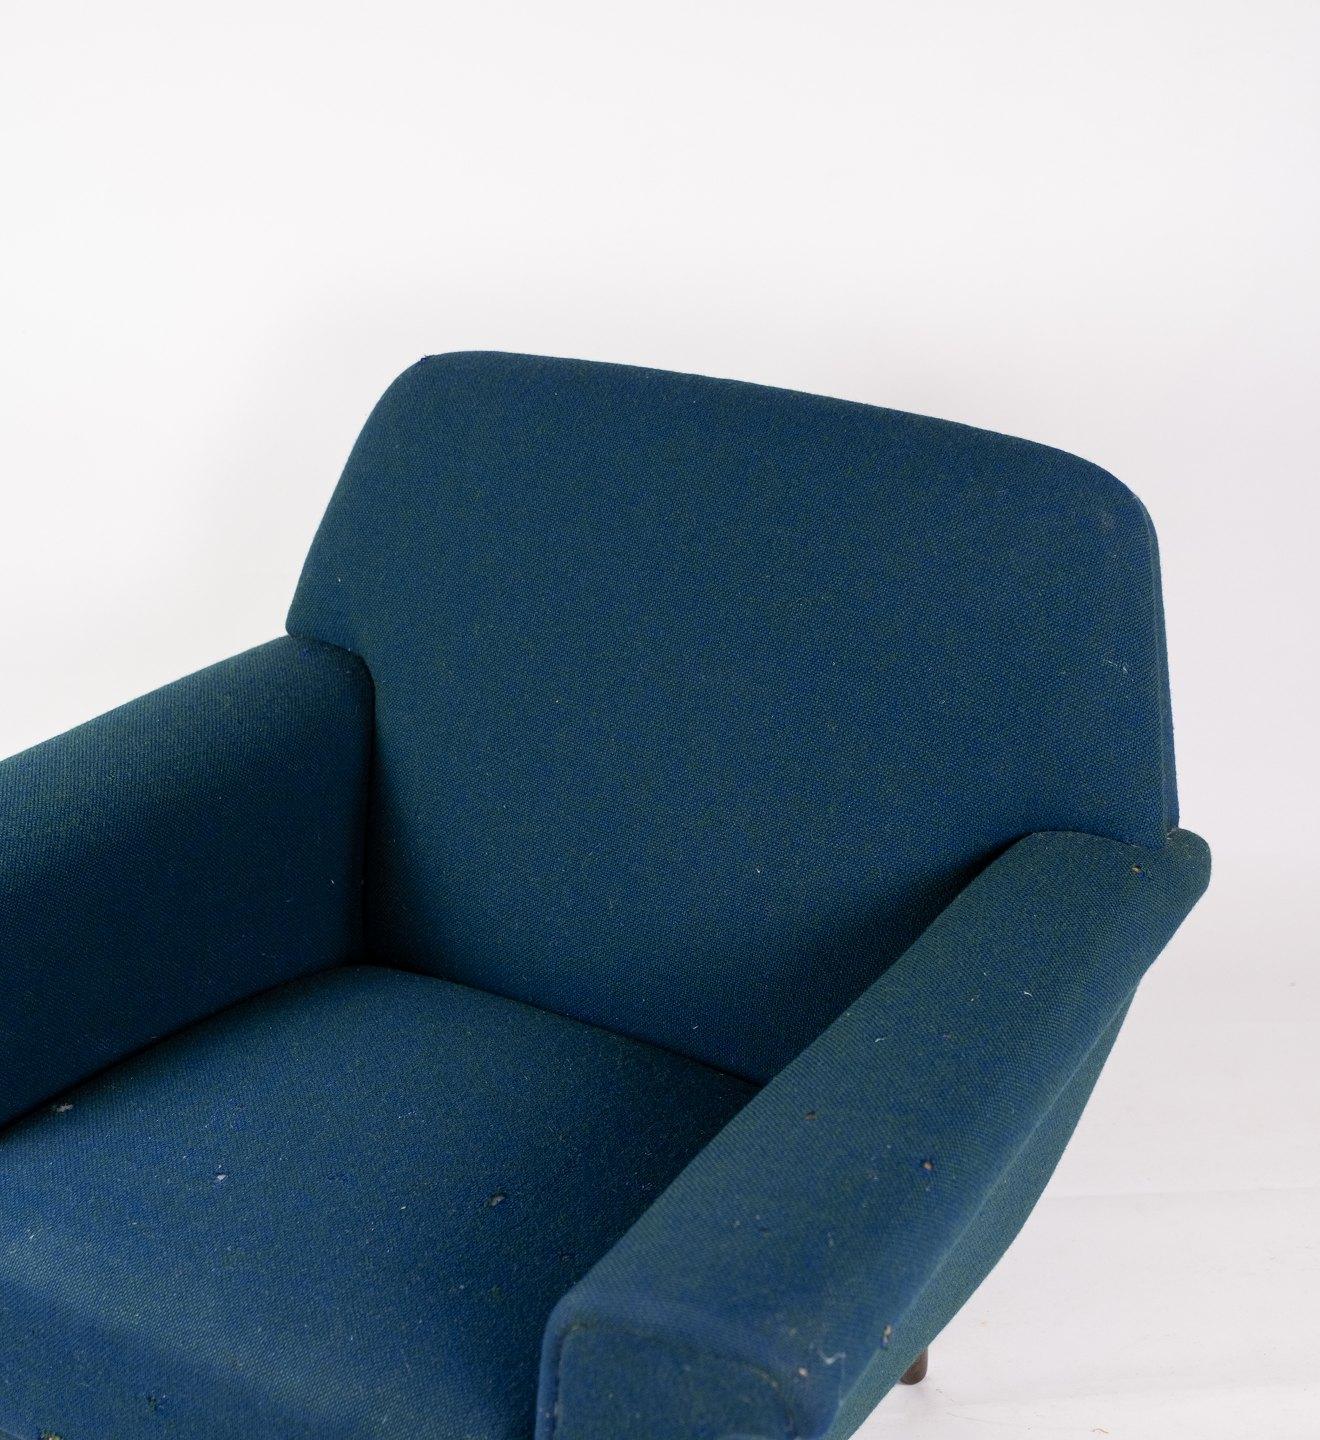 Fauteuil tapissé de tissu en laine bleu foncé et pieds en bois foncé, de conception danoise fabriqué par Fritz Hansen dans les années 1960. La chaise est en excellent état vintage.
Mesures : H 75 cm, L 88 cm, P 50 cm et SH 38 cm.